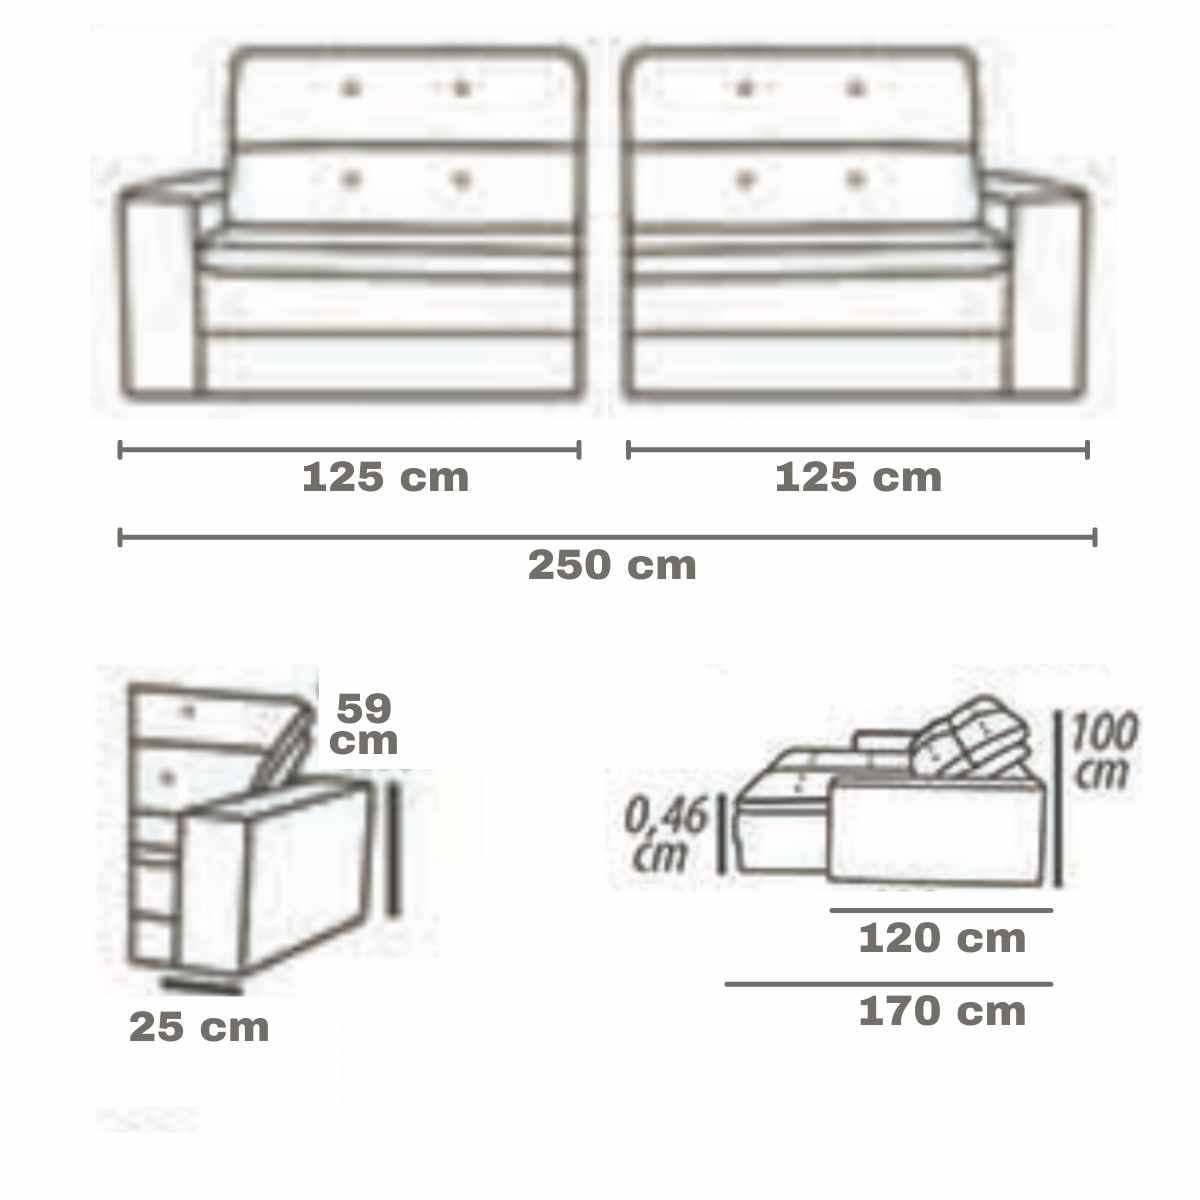 Sofá Retrátil e Reclinável 250cm Gion - Pronta Entrega  - Formato Móveis e Decorações